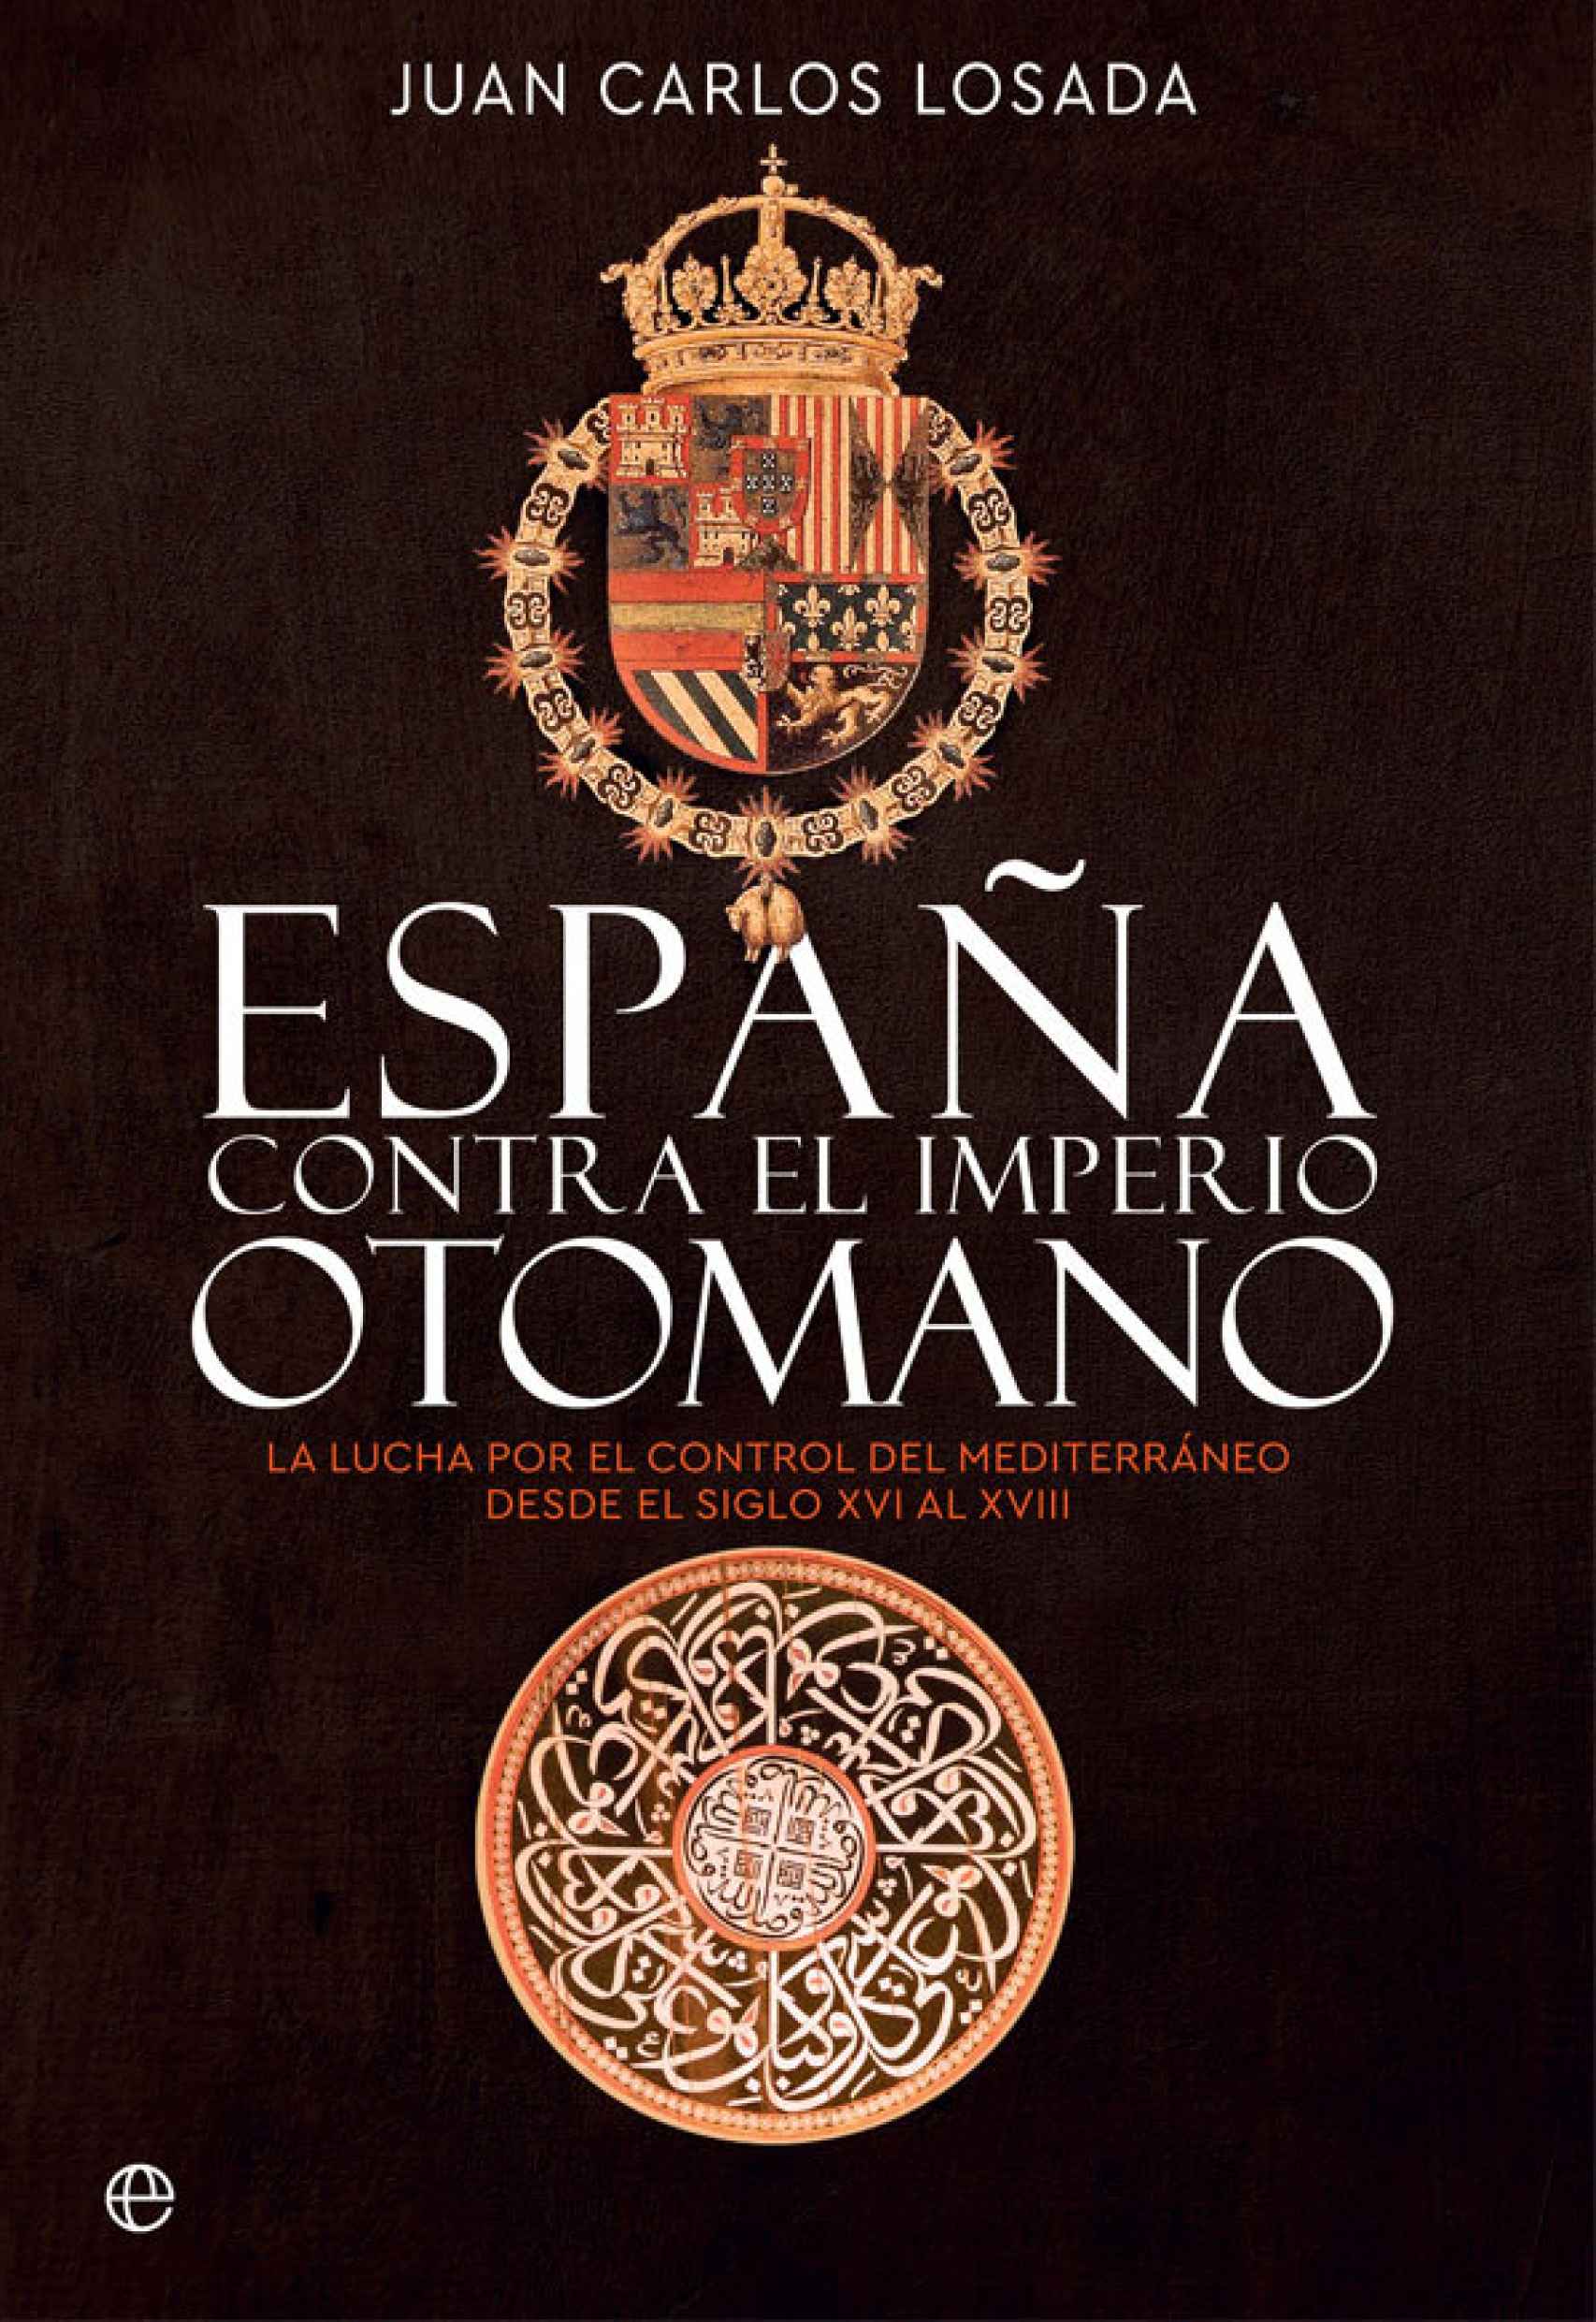 Portada de 'España contra el Imperio otomano'.